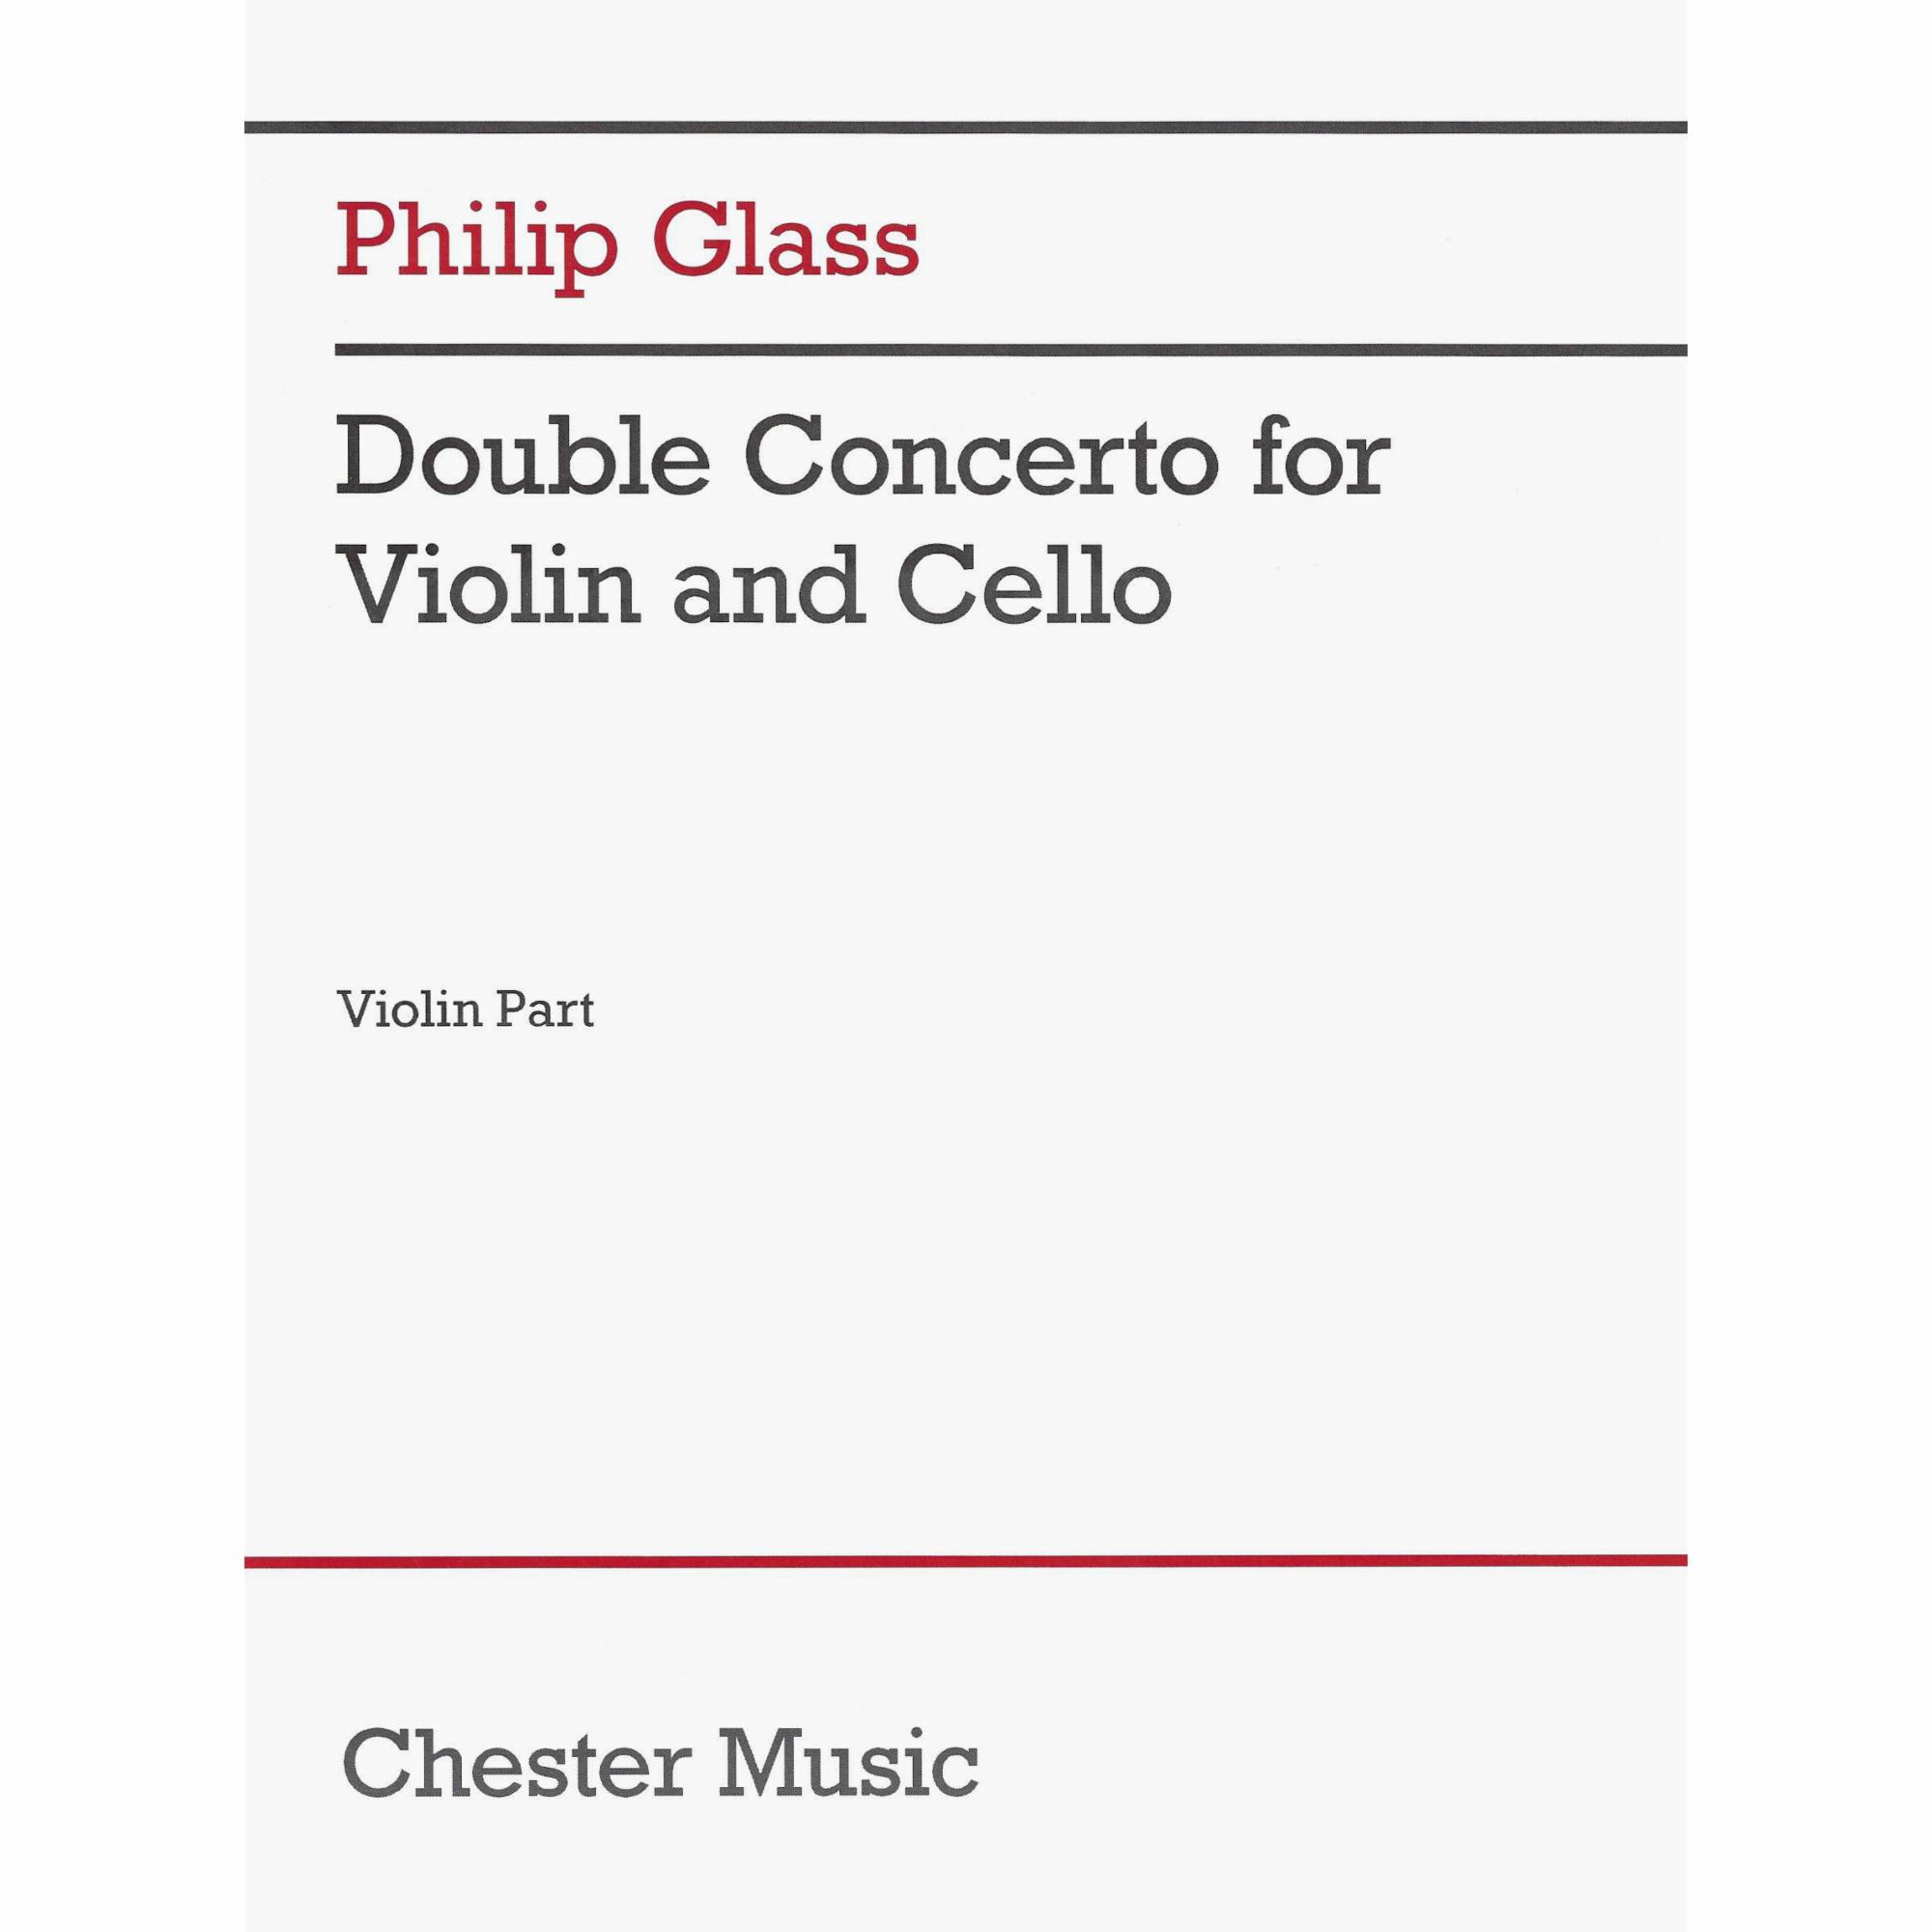 Glass -- Double Concerto for Violin and Cello